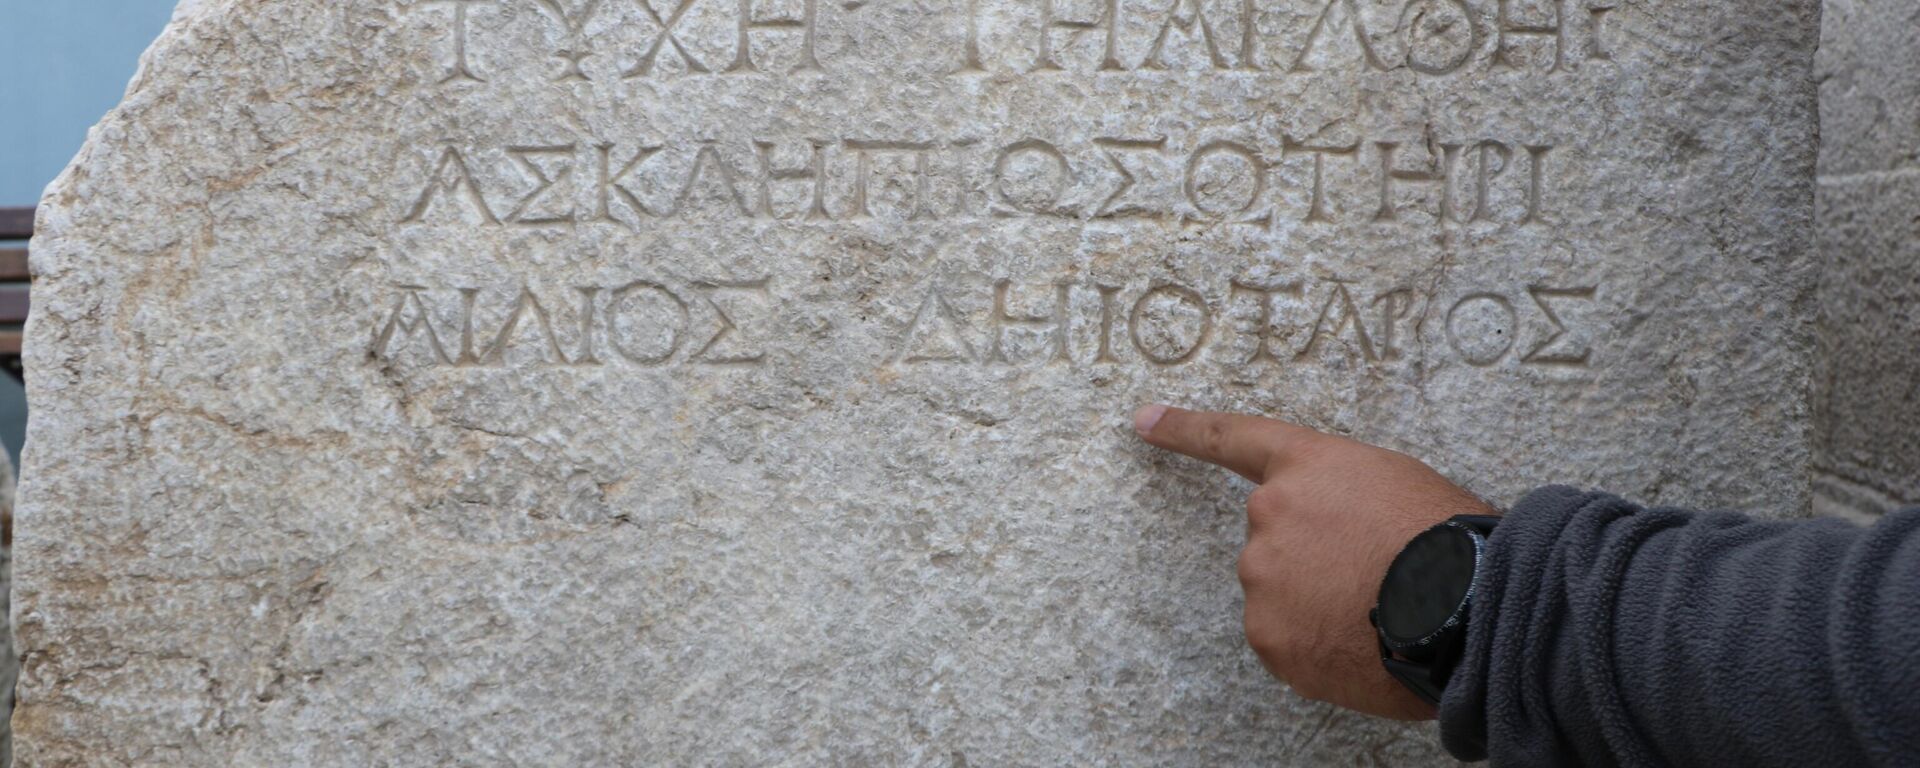 Hadrianaupolis'te sağlık tanrısı Asklepios'un adının yazılı olduğu yazıt bulundu - Sputnik Türkiye, 1920, 06.09.2022